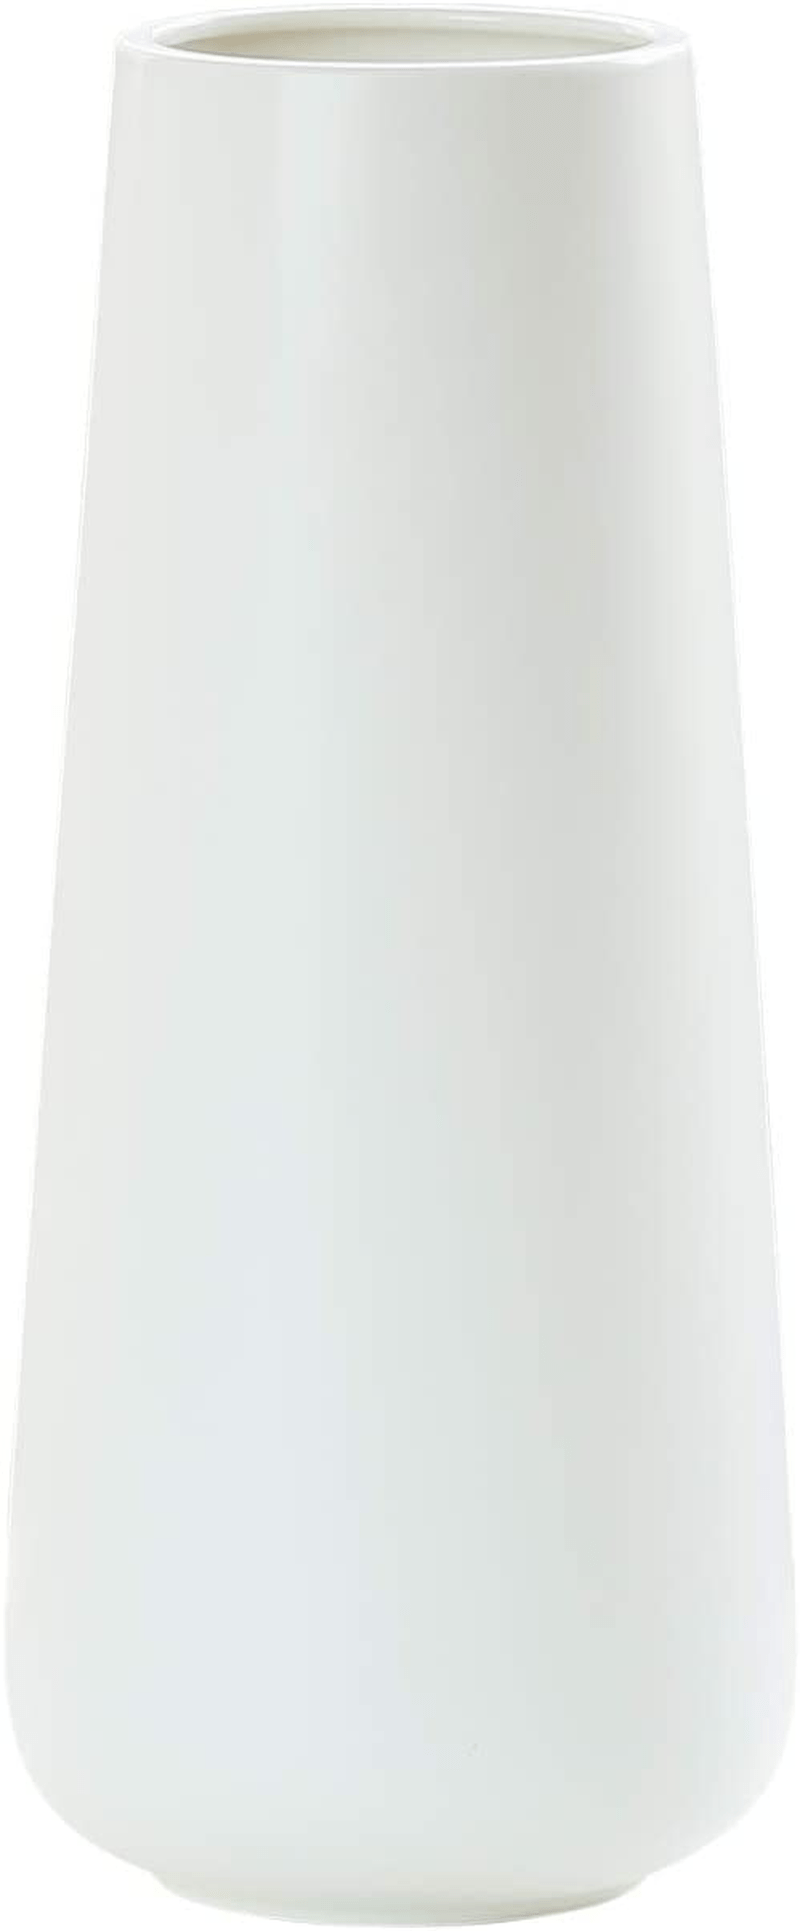 11 Inch Matte White Ceramic Flower Vase for Home Décor, Design Box Package, VS-MAT-W-11 Home & Garden > Decor > Vases D'vine Dev Matte White 11 Inch 